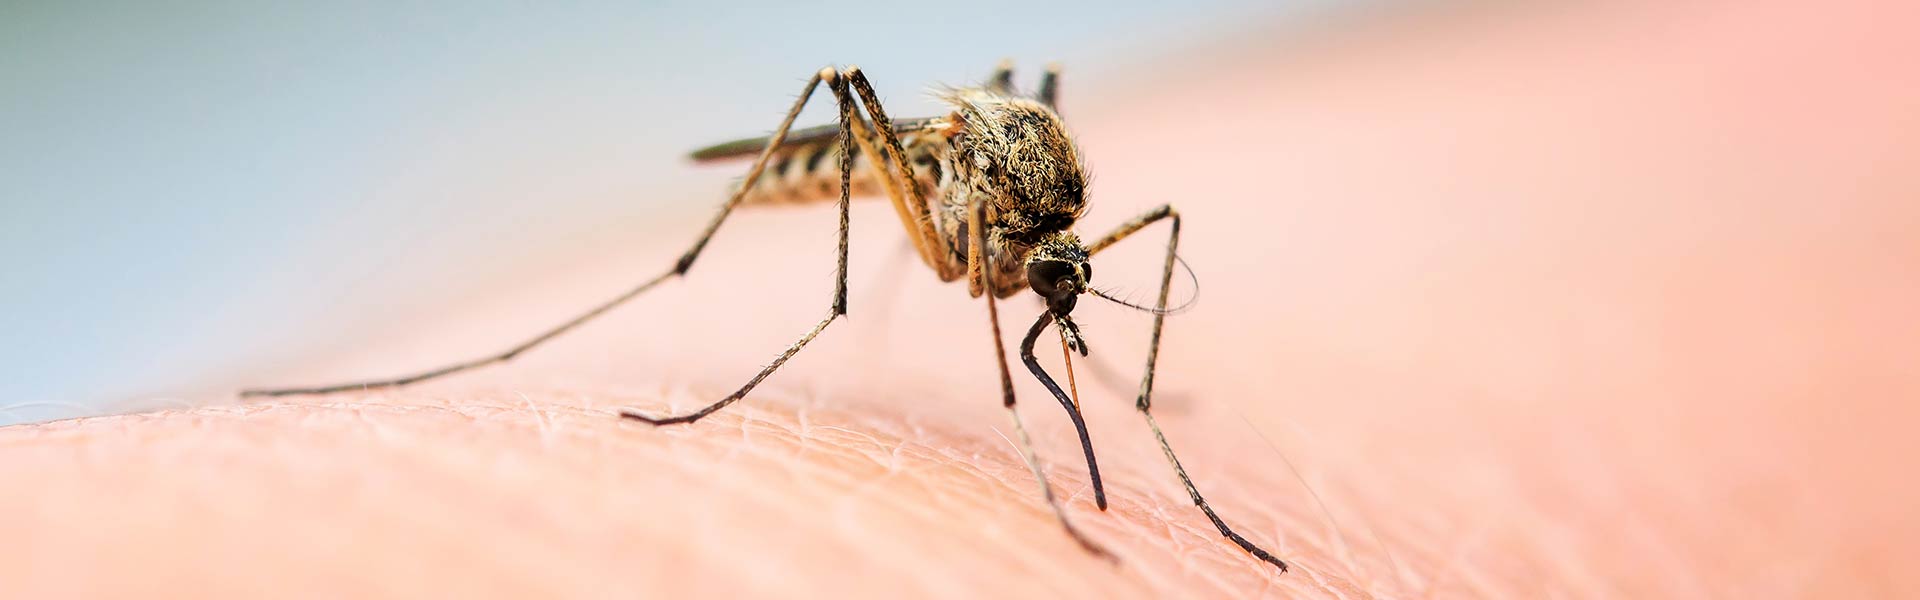 Eine Mückenstiche sitz auf einem Arm und sticht zu.